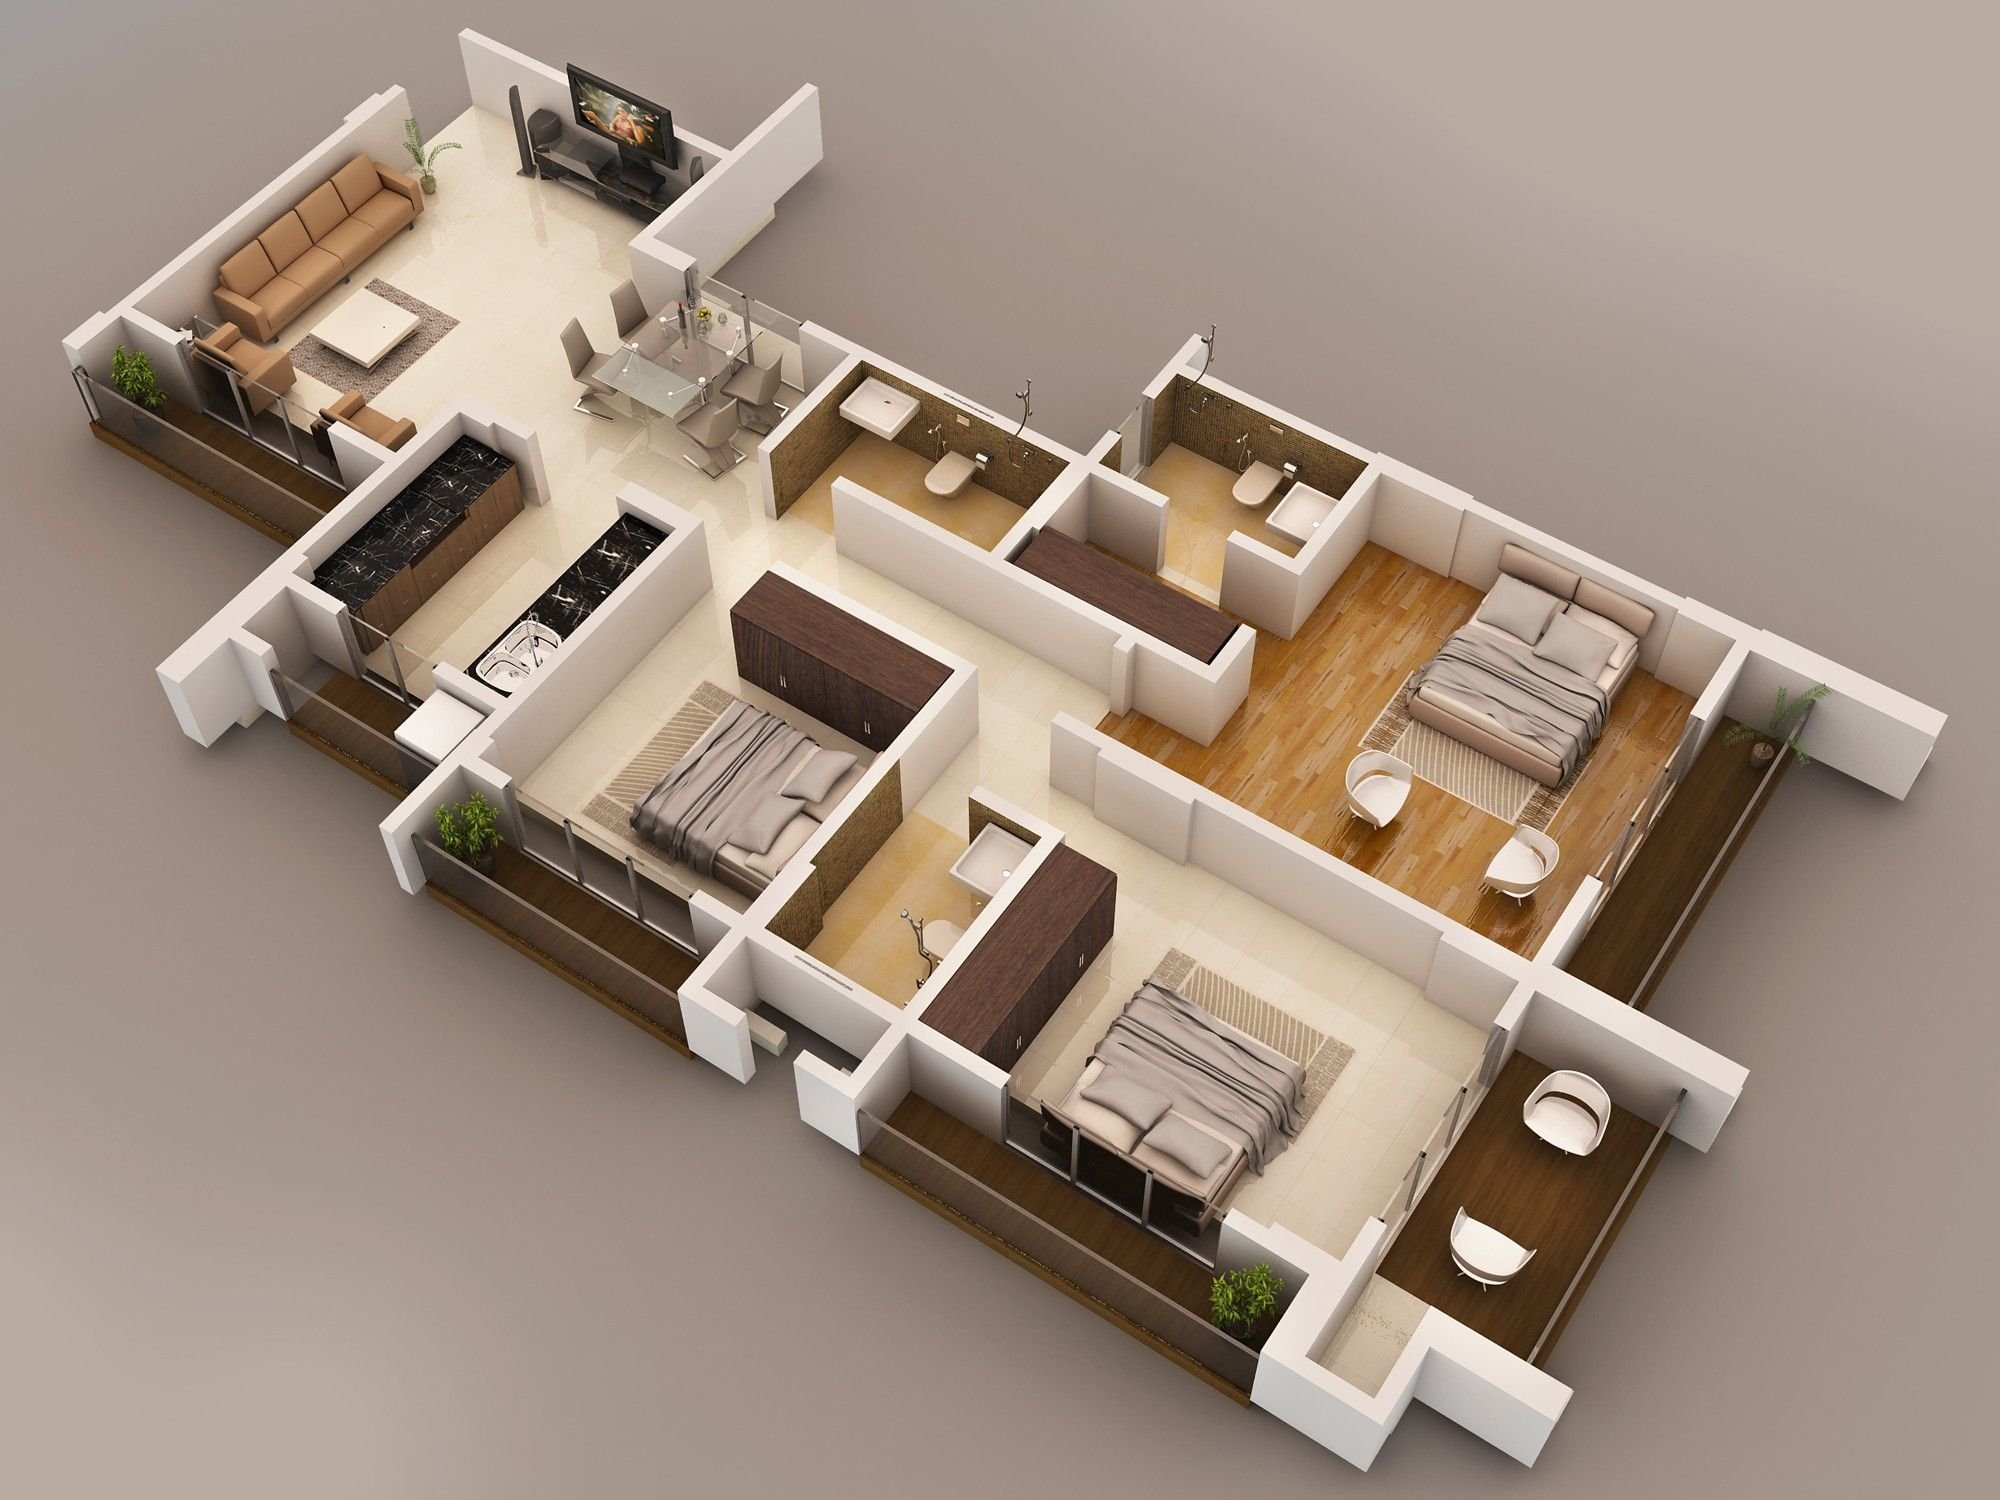 Дом plans. Floorplan 3d проекты. Американский дом планировка 3 d. Планировки элитных квартир. Дизайн интерьера 3d.